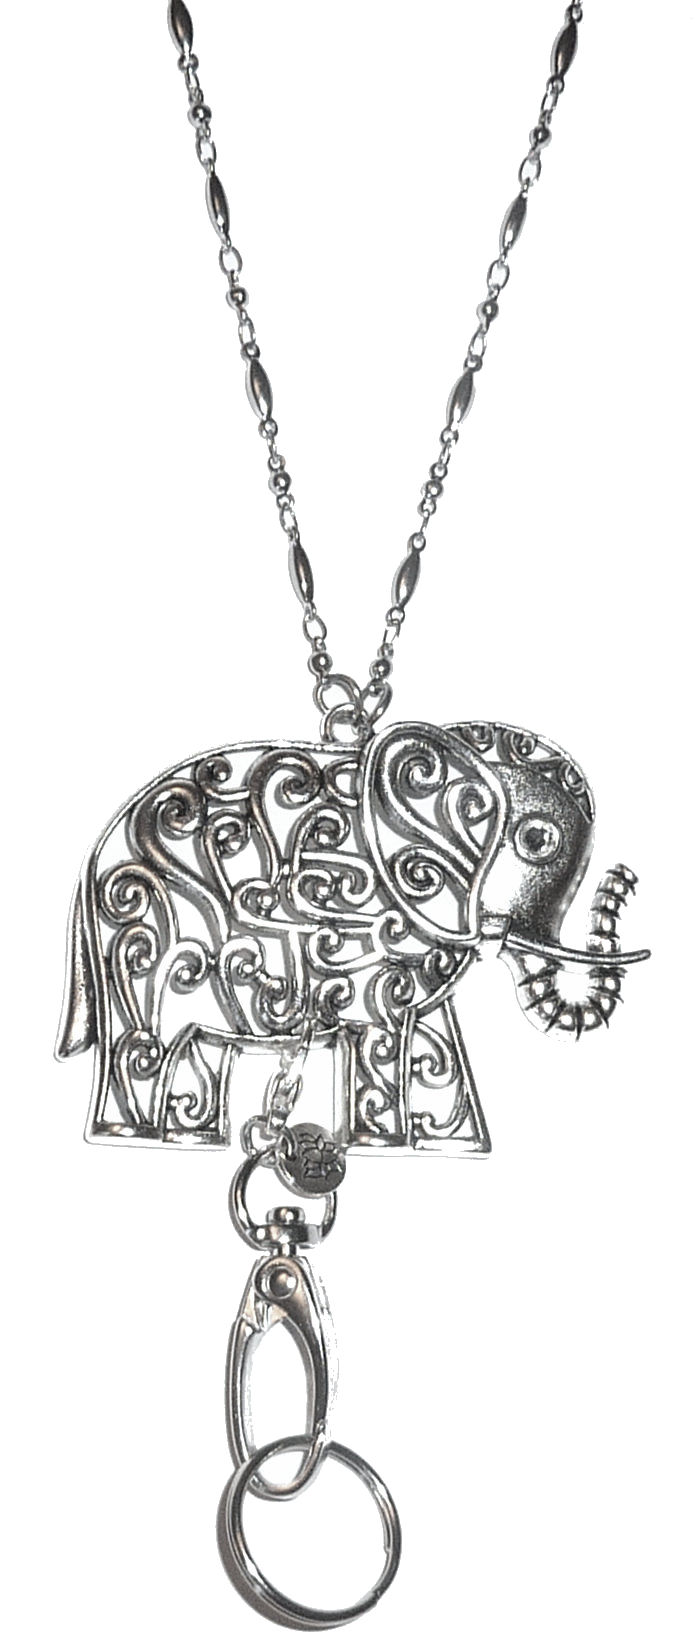 Silver Elephant Necklace Lanyard - Stylish ID Badge Holder - Breakaway  - Safer